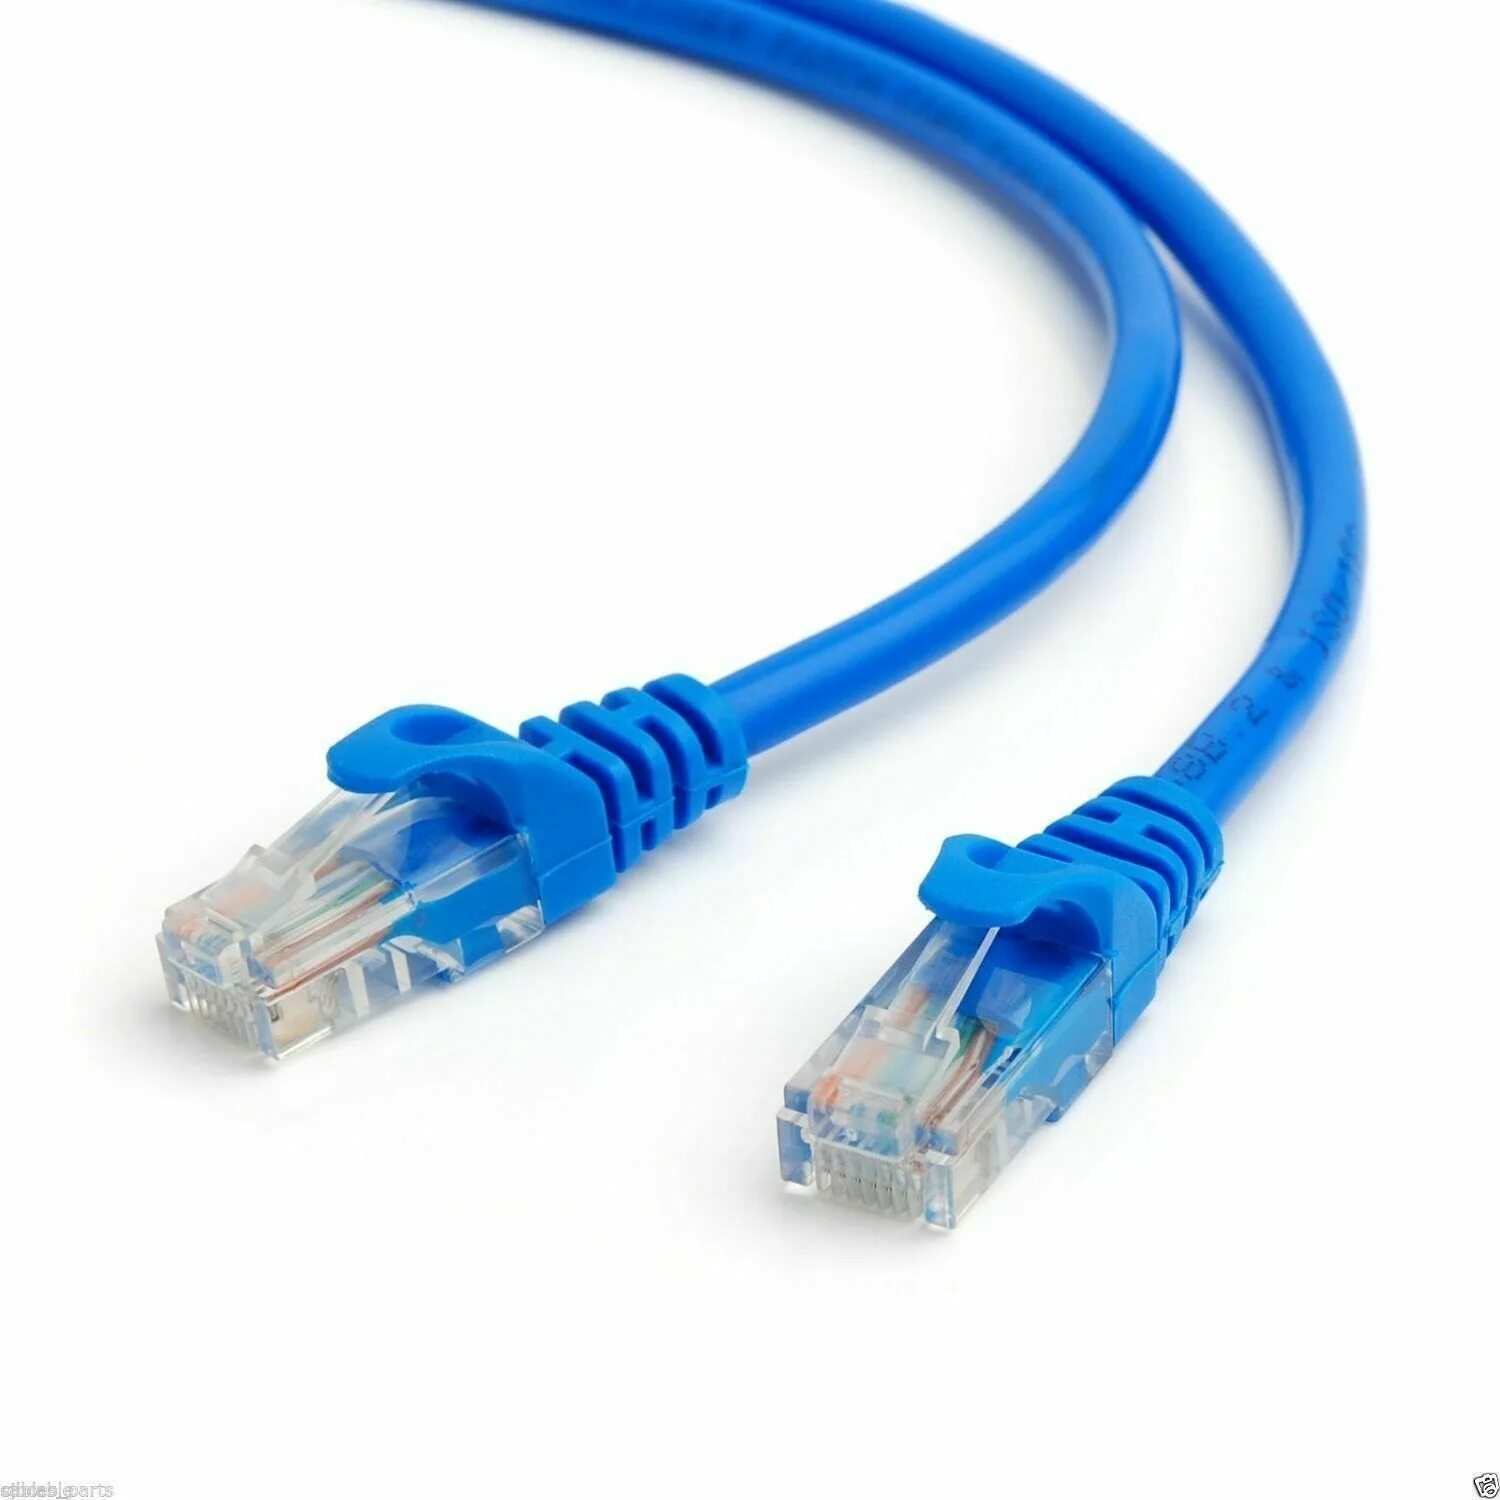 Купить сетевой кабель для интернета. Кабель Cat.5. c разъемами rj45. Rj45-rj45 Cat 5e Patch-Cord. Интернет кабель Cat 5e. Кабель Ethernet RJ-45.